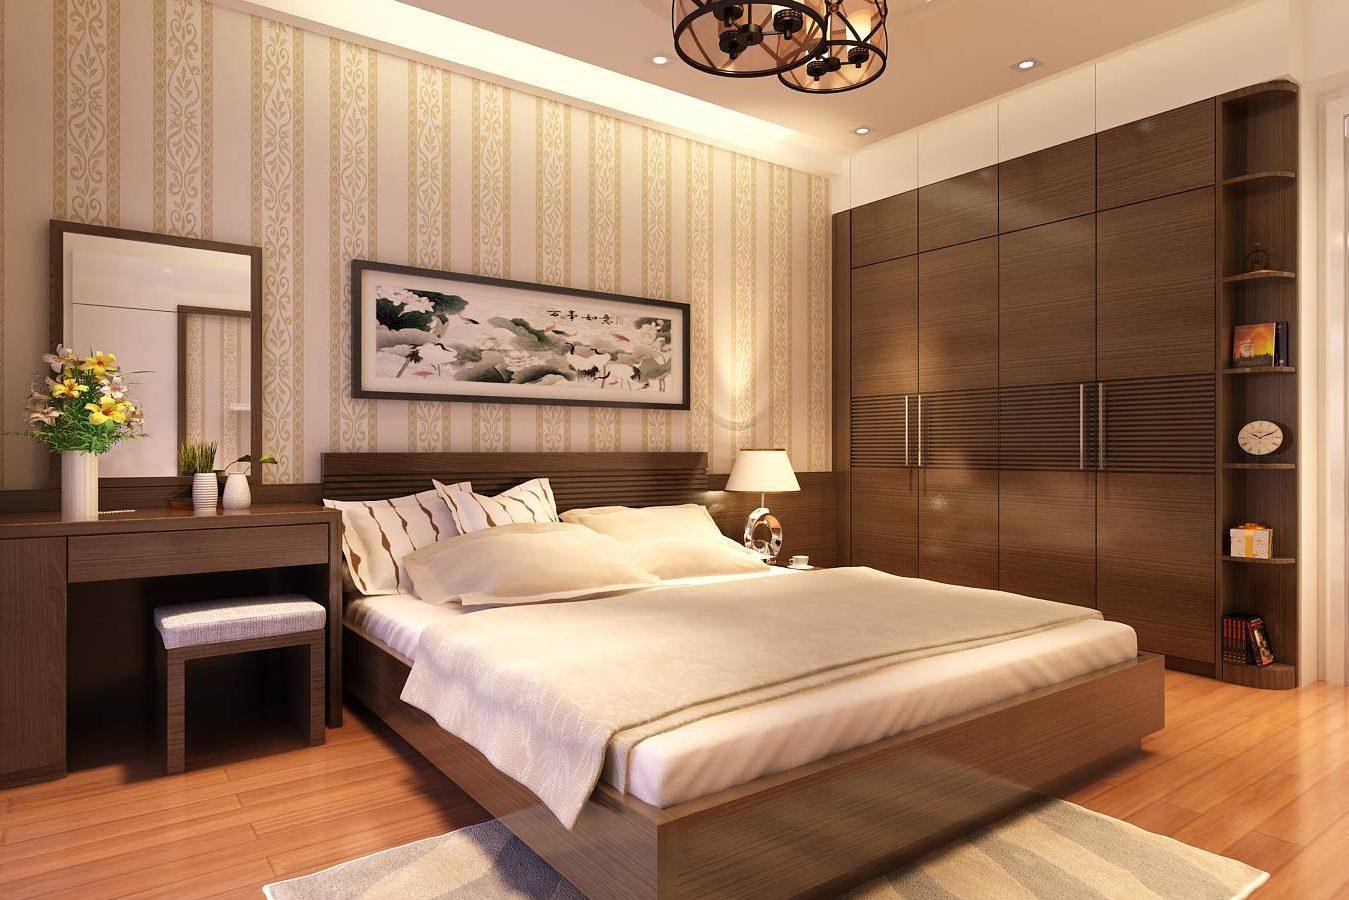 Phòng ngủ cho ông bà với thiết kế nội thất tối giản, đầy đủ tiện nghi, sử dụng tông màu trầm ấm, phù hợp với người cao tuổi.